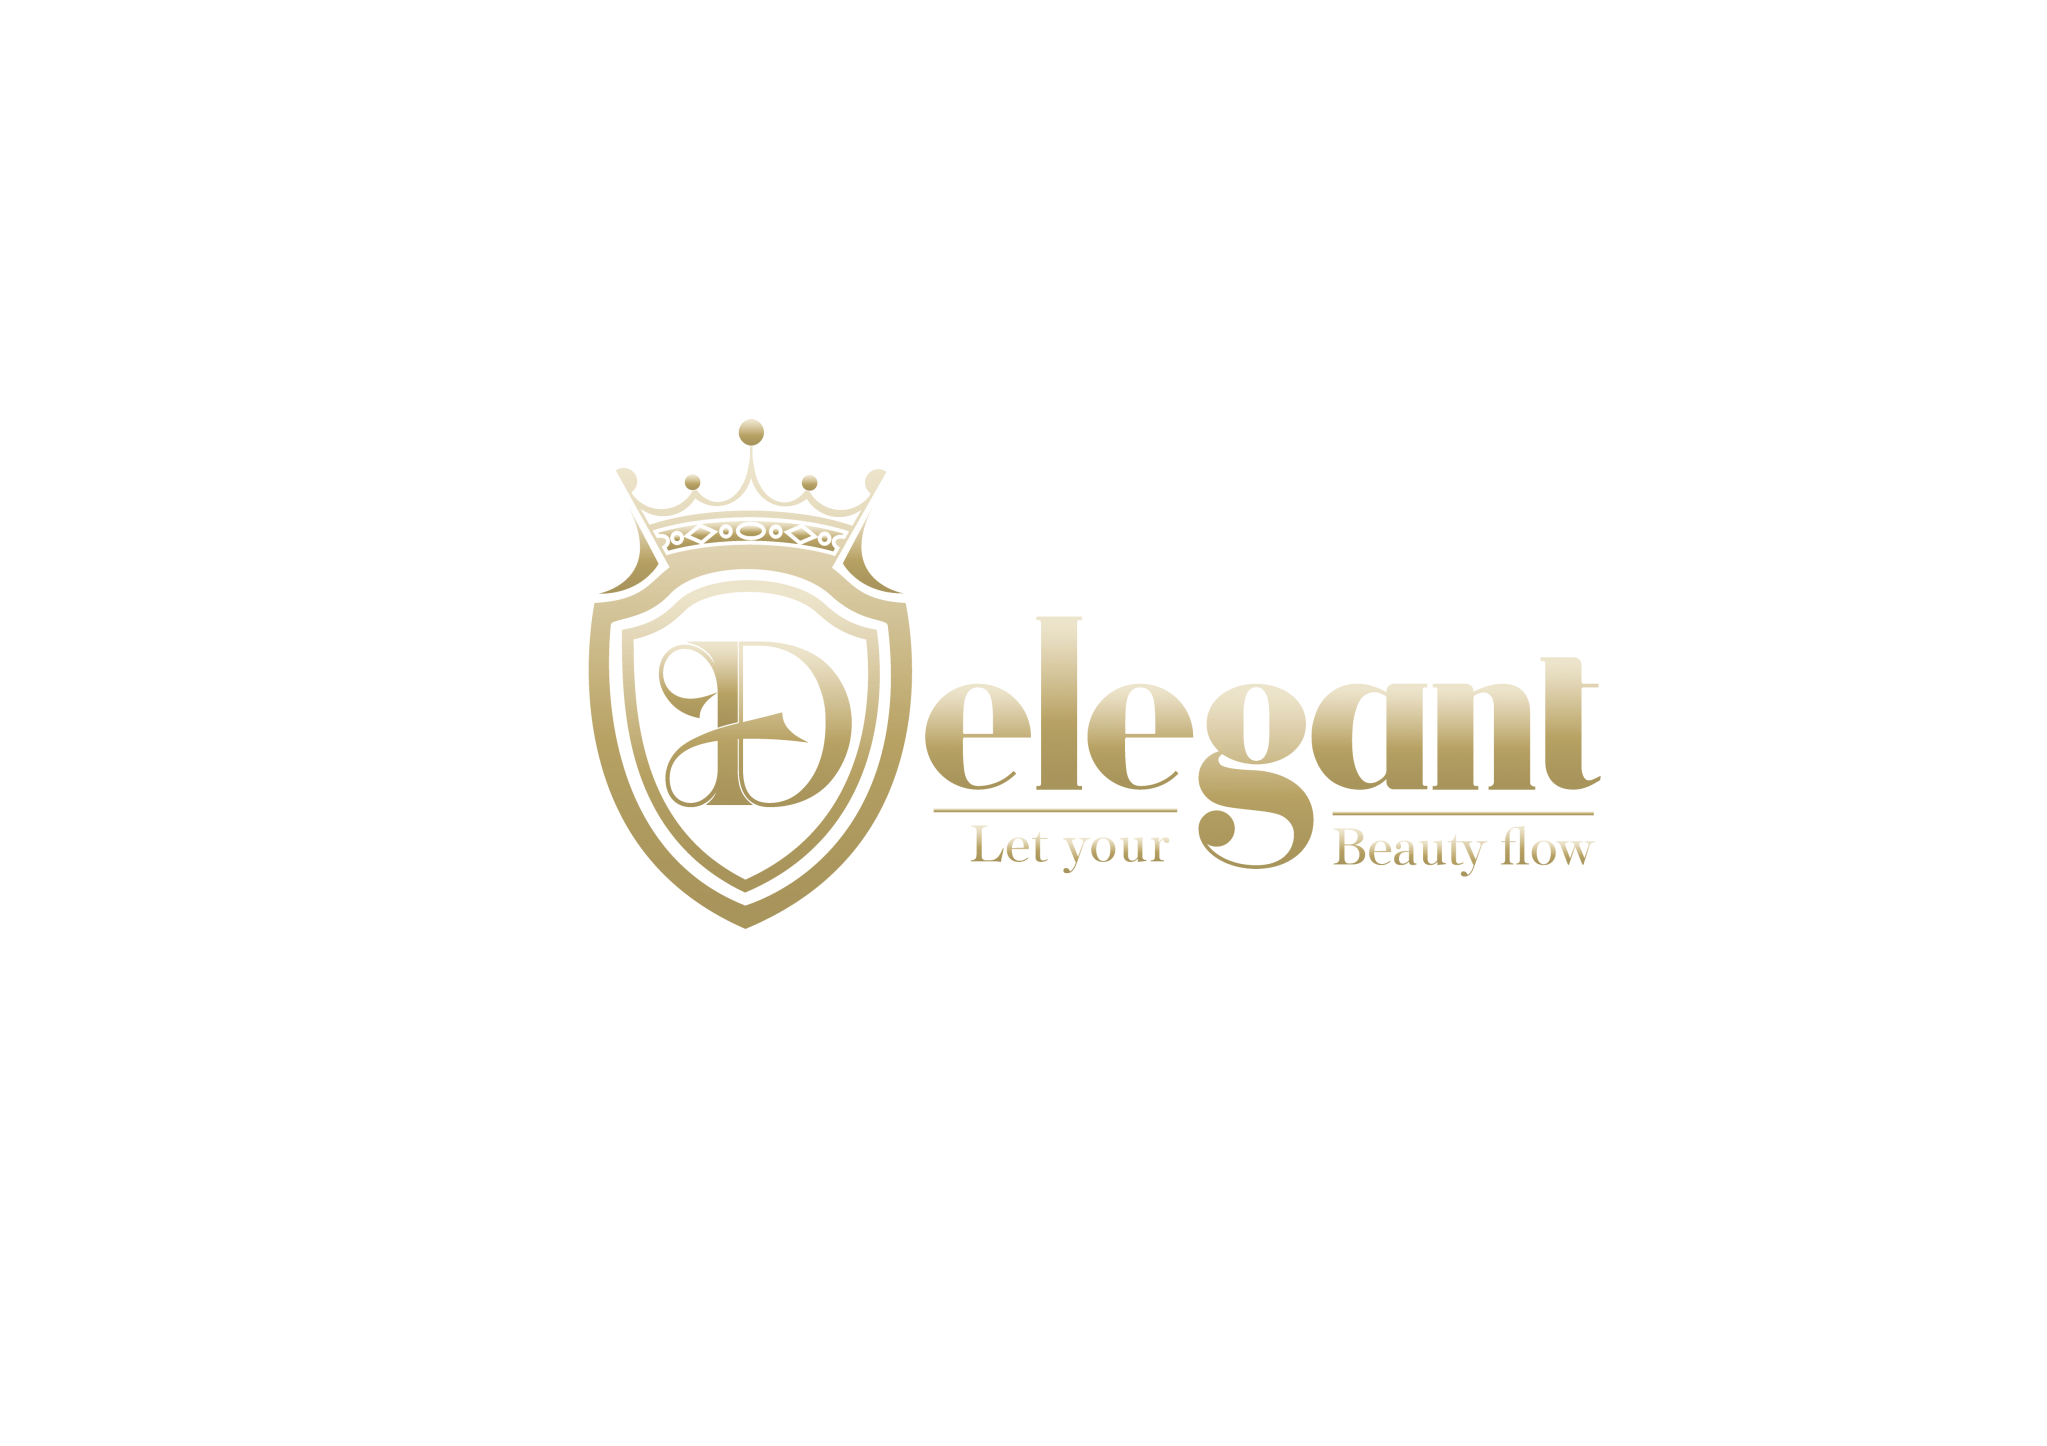 delegant-logo-gold-in-black